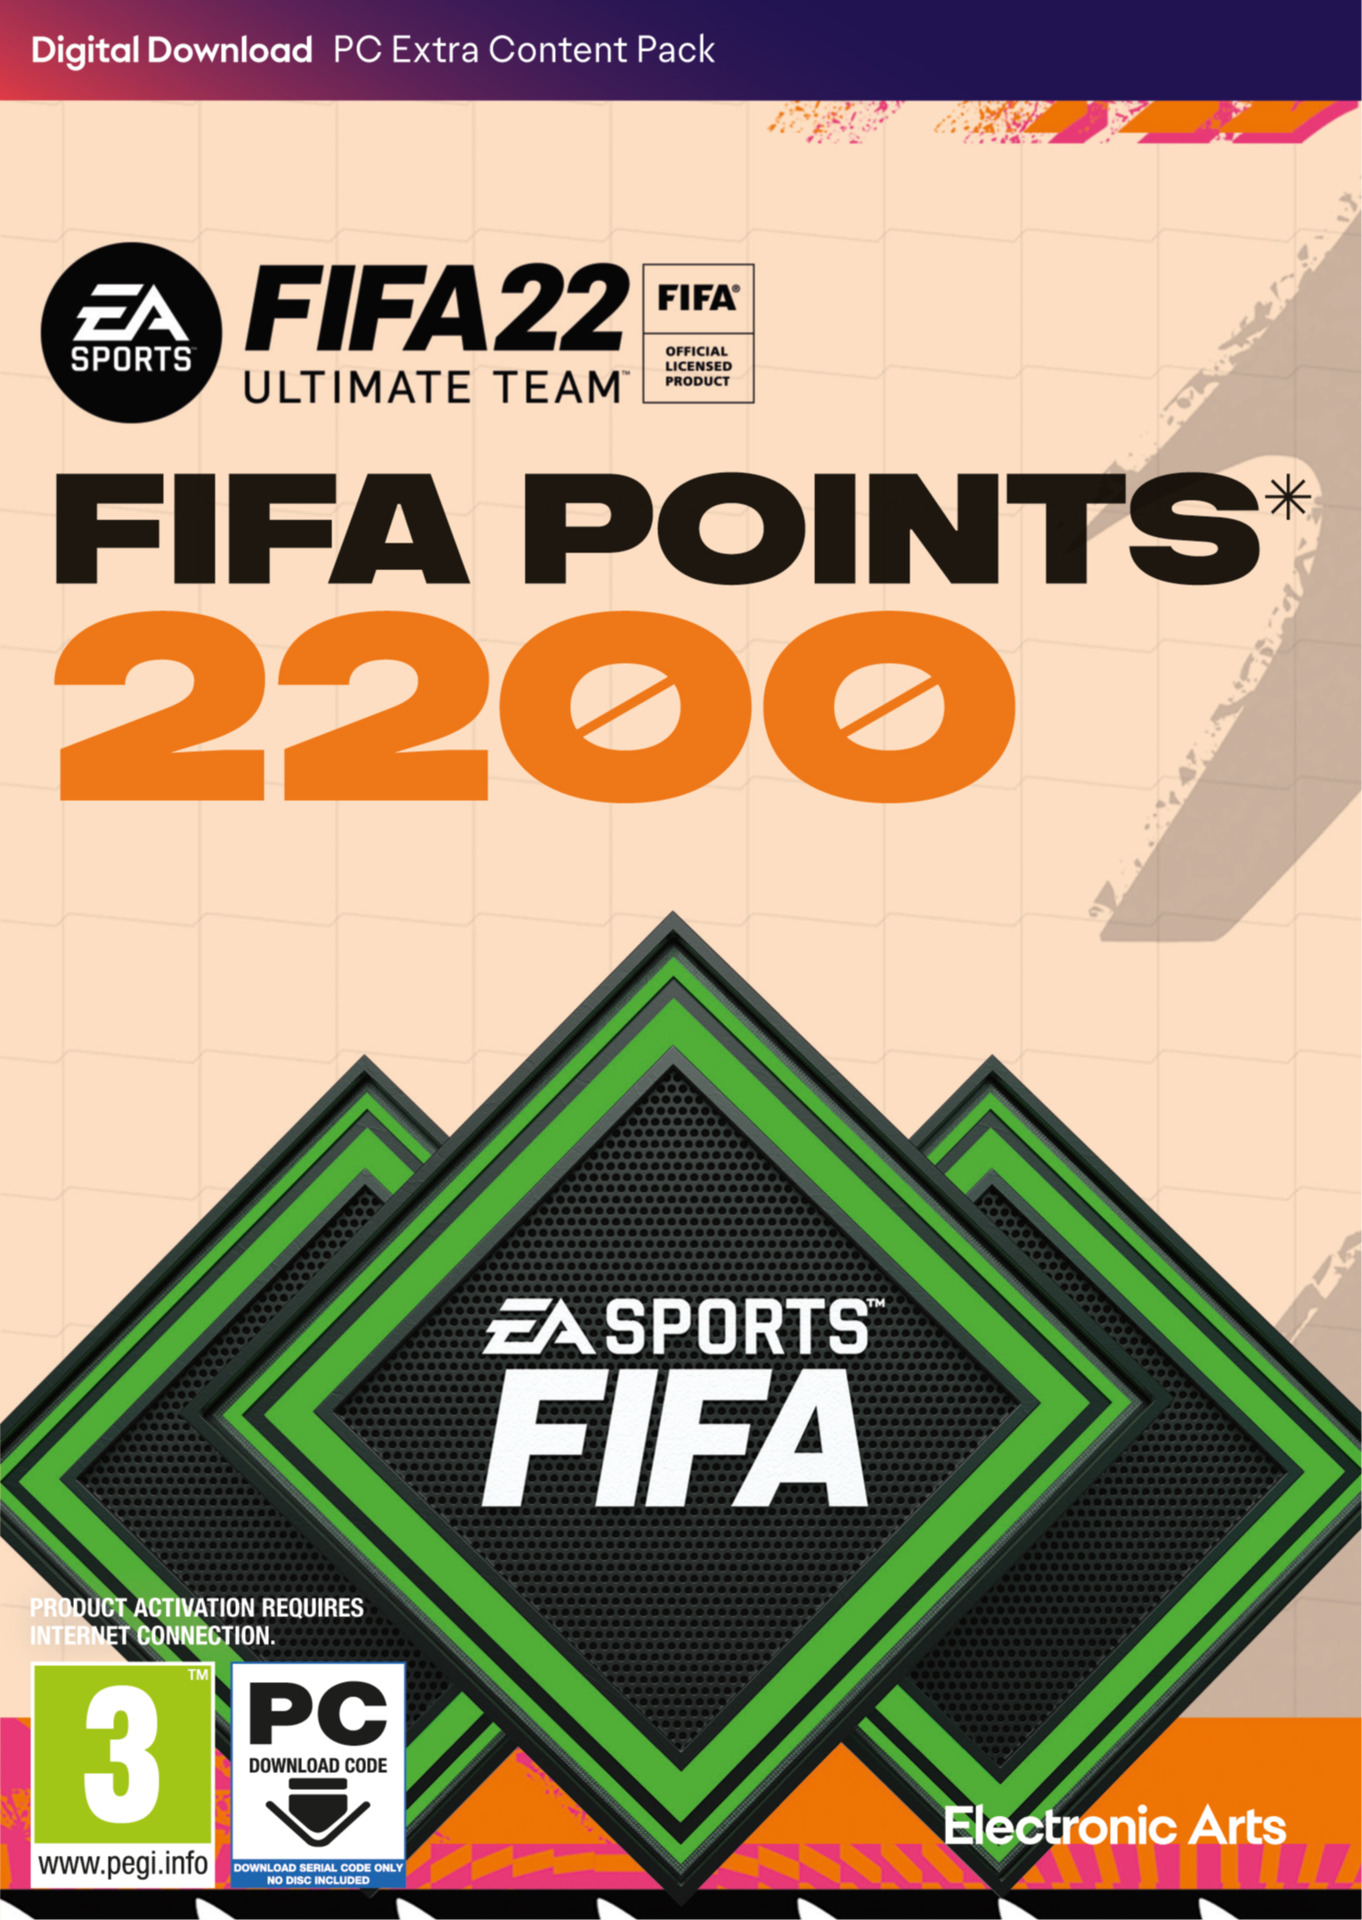 FIFA 22 - 2200 FUT POINTS